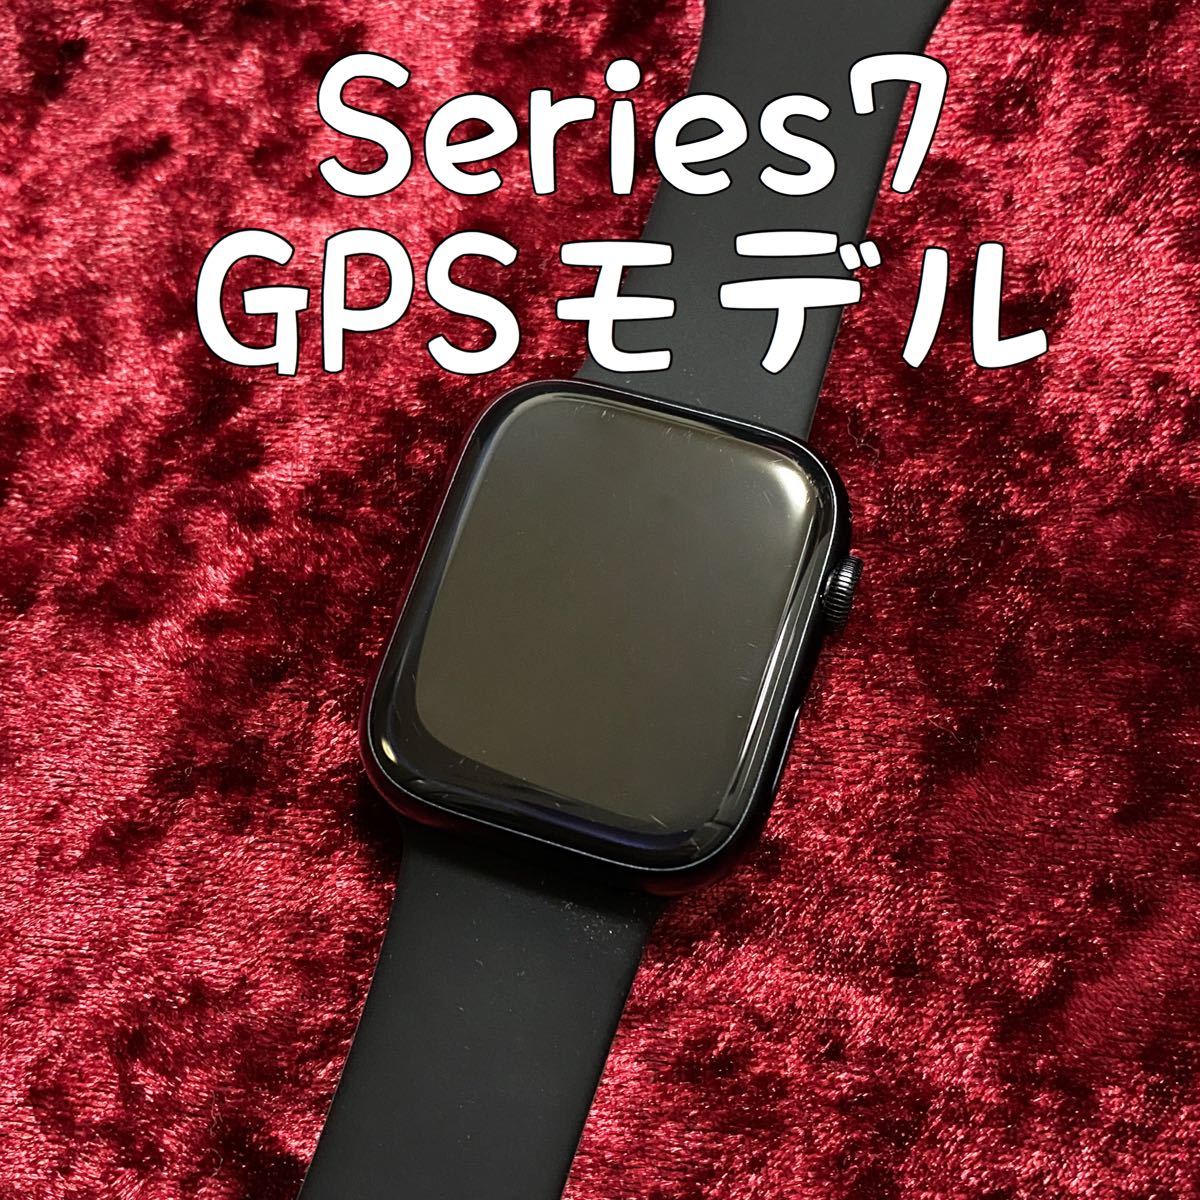 Apple Watch Series 7 GPSモデル 45mm ミッドナイト+stbp.com.br